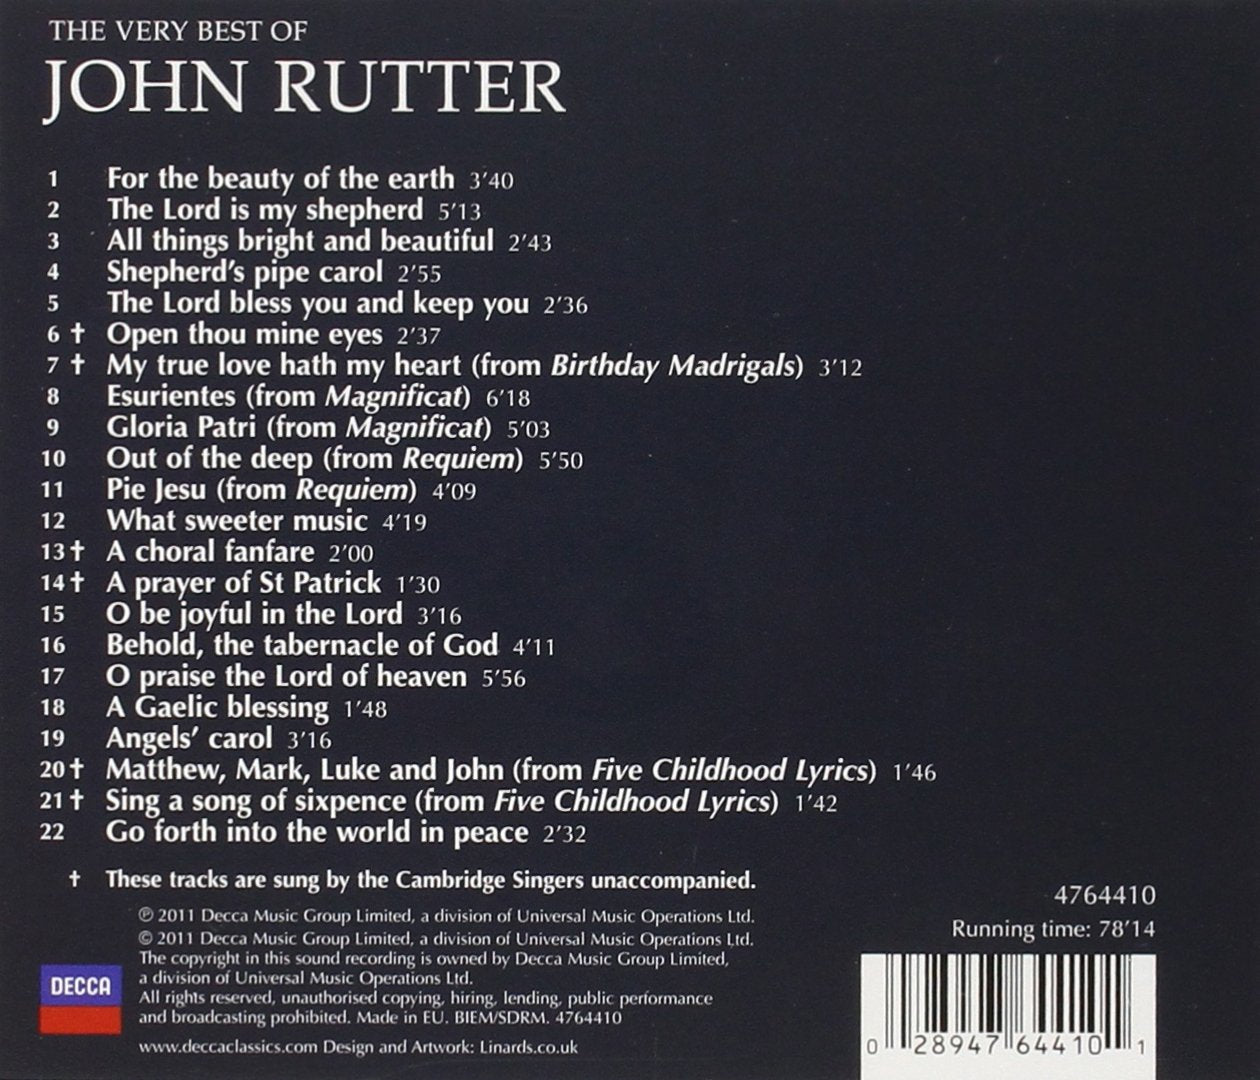 RUTTER: The John Rutter Collection - John Rutter and the Cambridge Singers